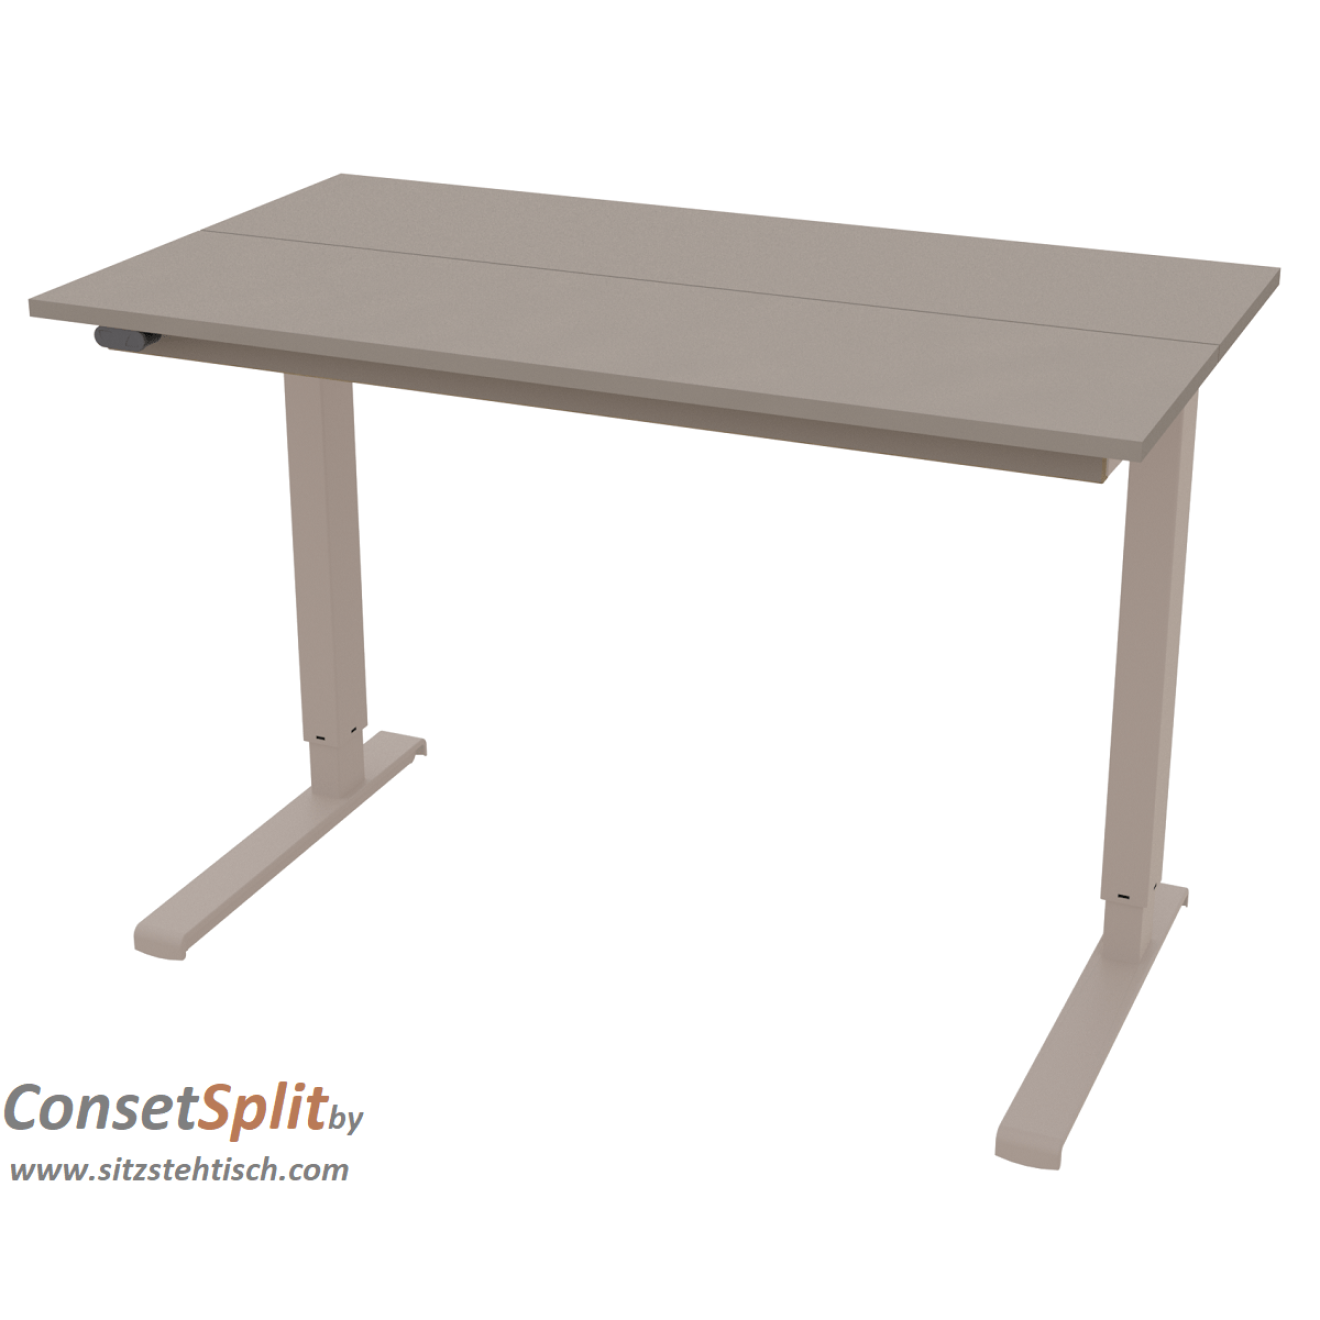 Schreibtisch - Split - elektrisch höhenverstellbar - mit großem aufklappbaren Ablagefach - Tischplatte 110 x 60 cm - Farbe Clay - Höhe 68 - 120 cm verstellbar - Conset - SPLIT 7L100-60 LM